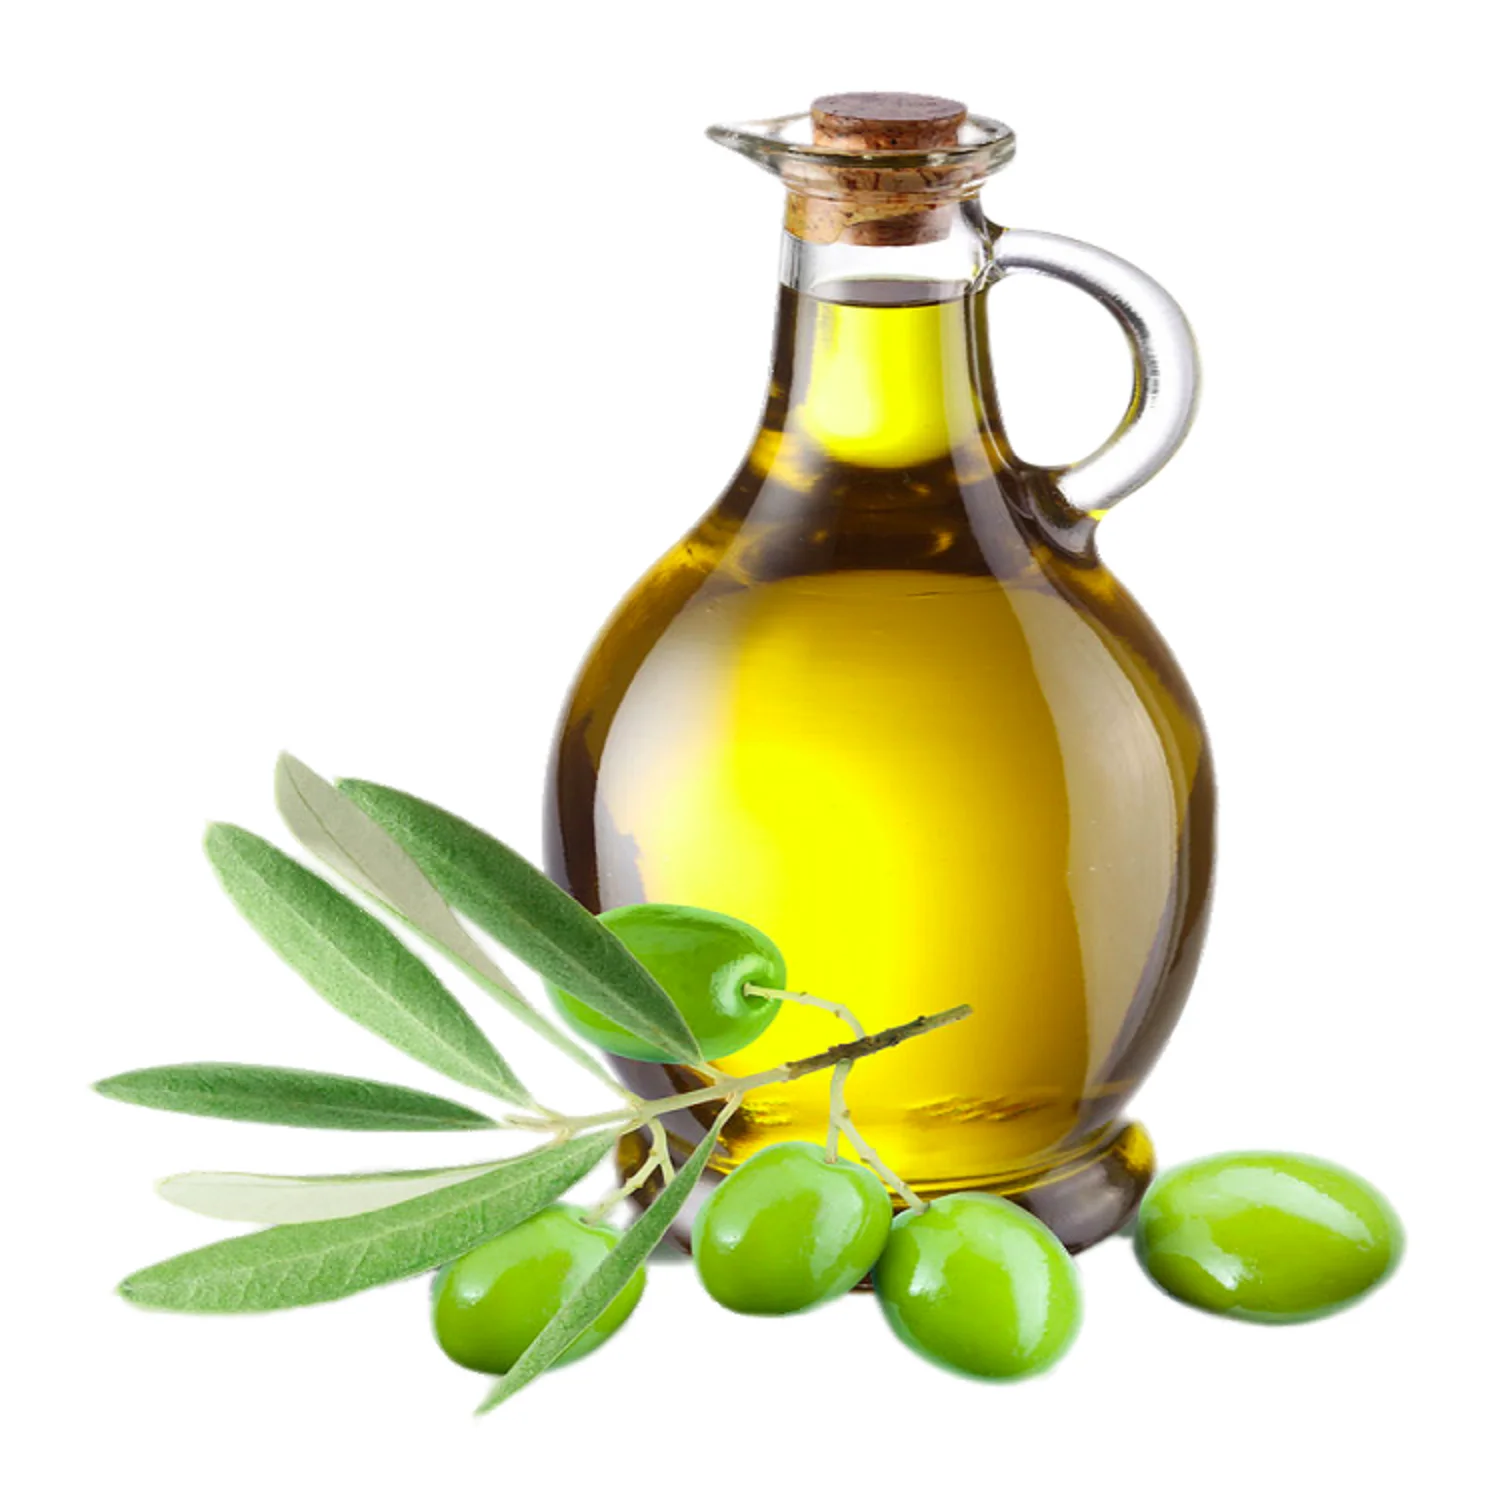 Оливковое масло высшего качества. Olive Oil масло оливковое. Олив Ойл масло оливковое. Масло оливковое natural Olive Oil. Масло оливы, жожоба оливы.